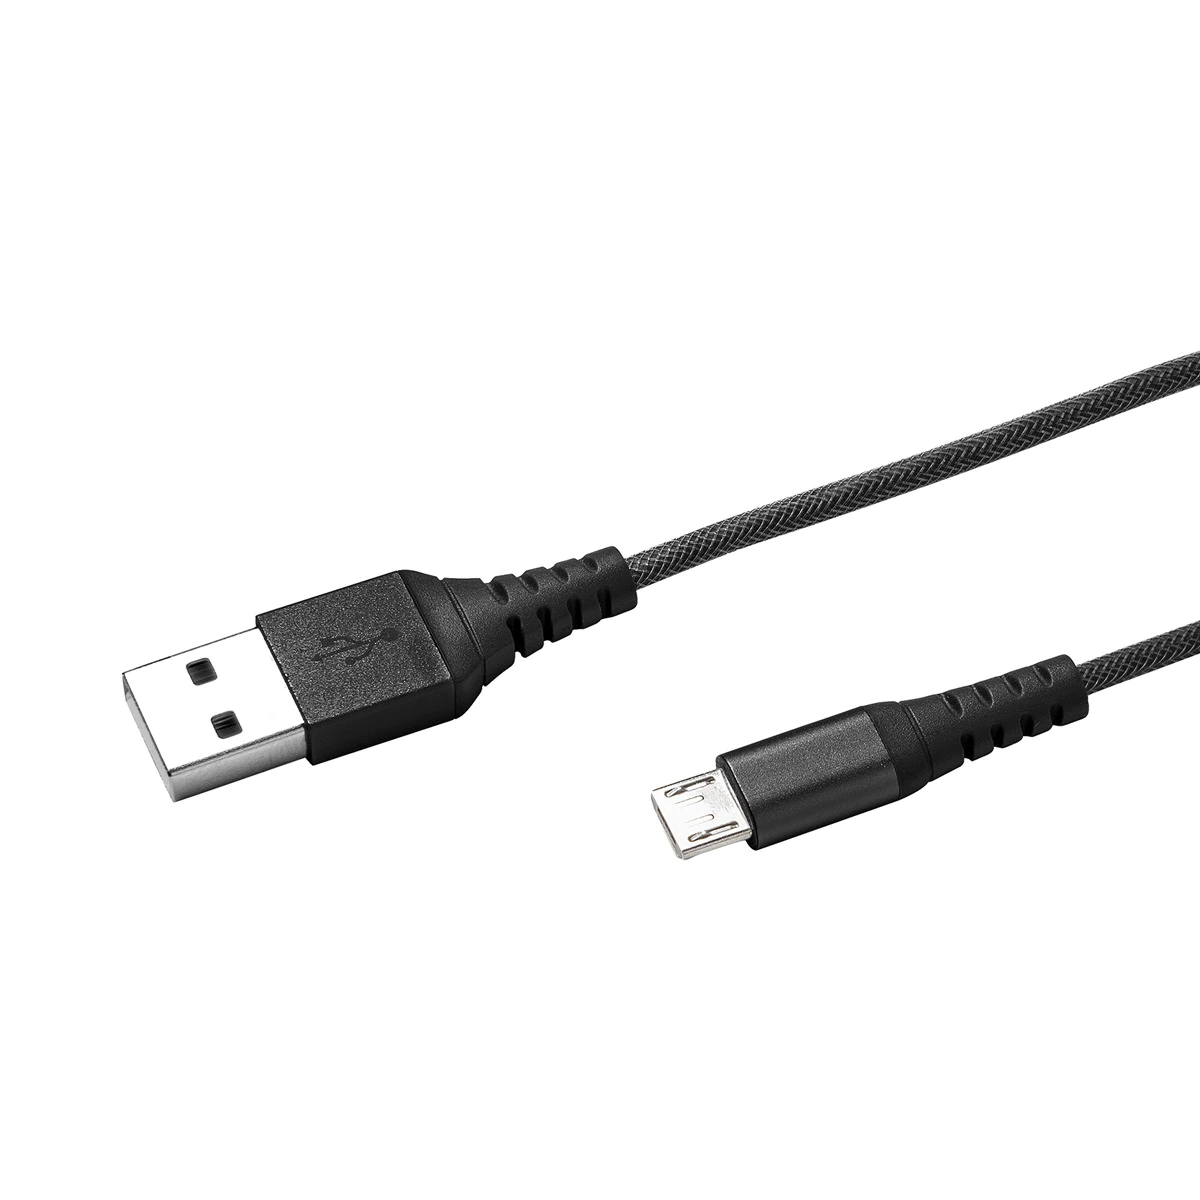 Cable Celly USB a Micro USB de Nylon negro